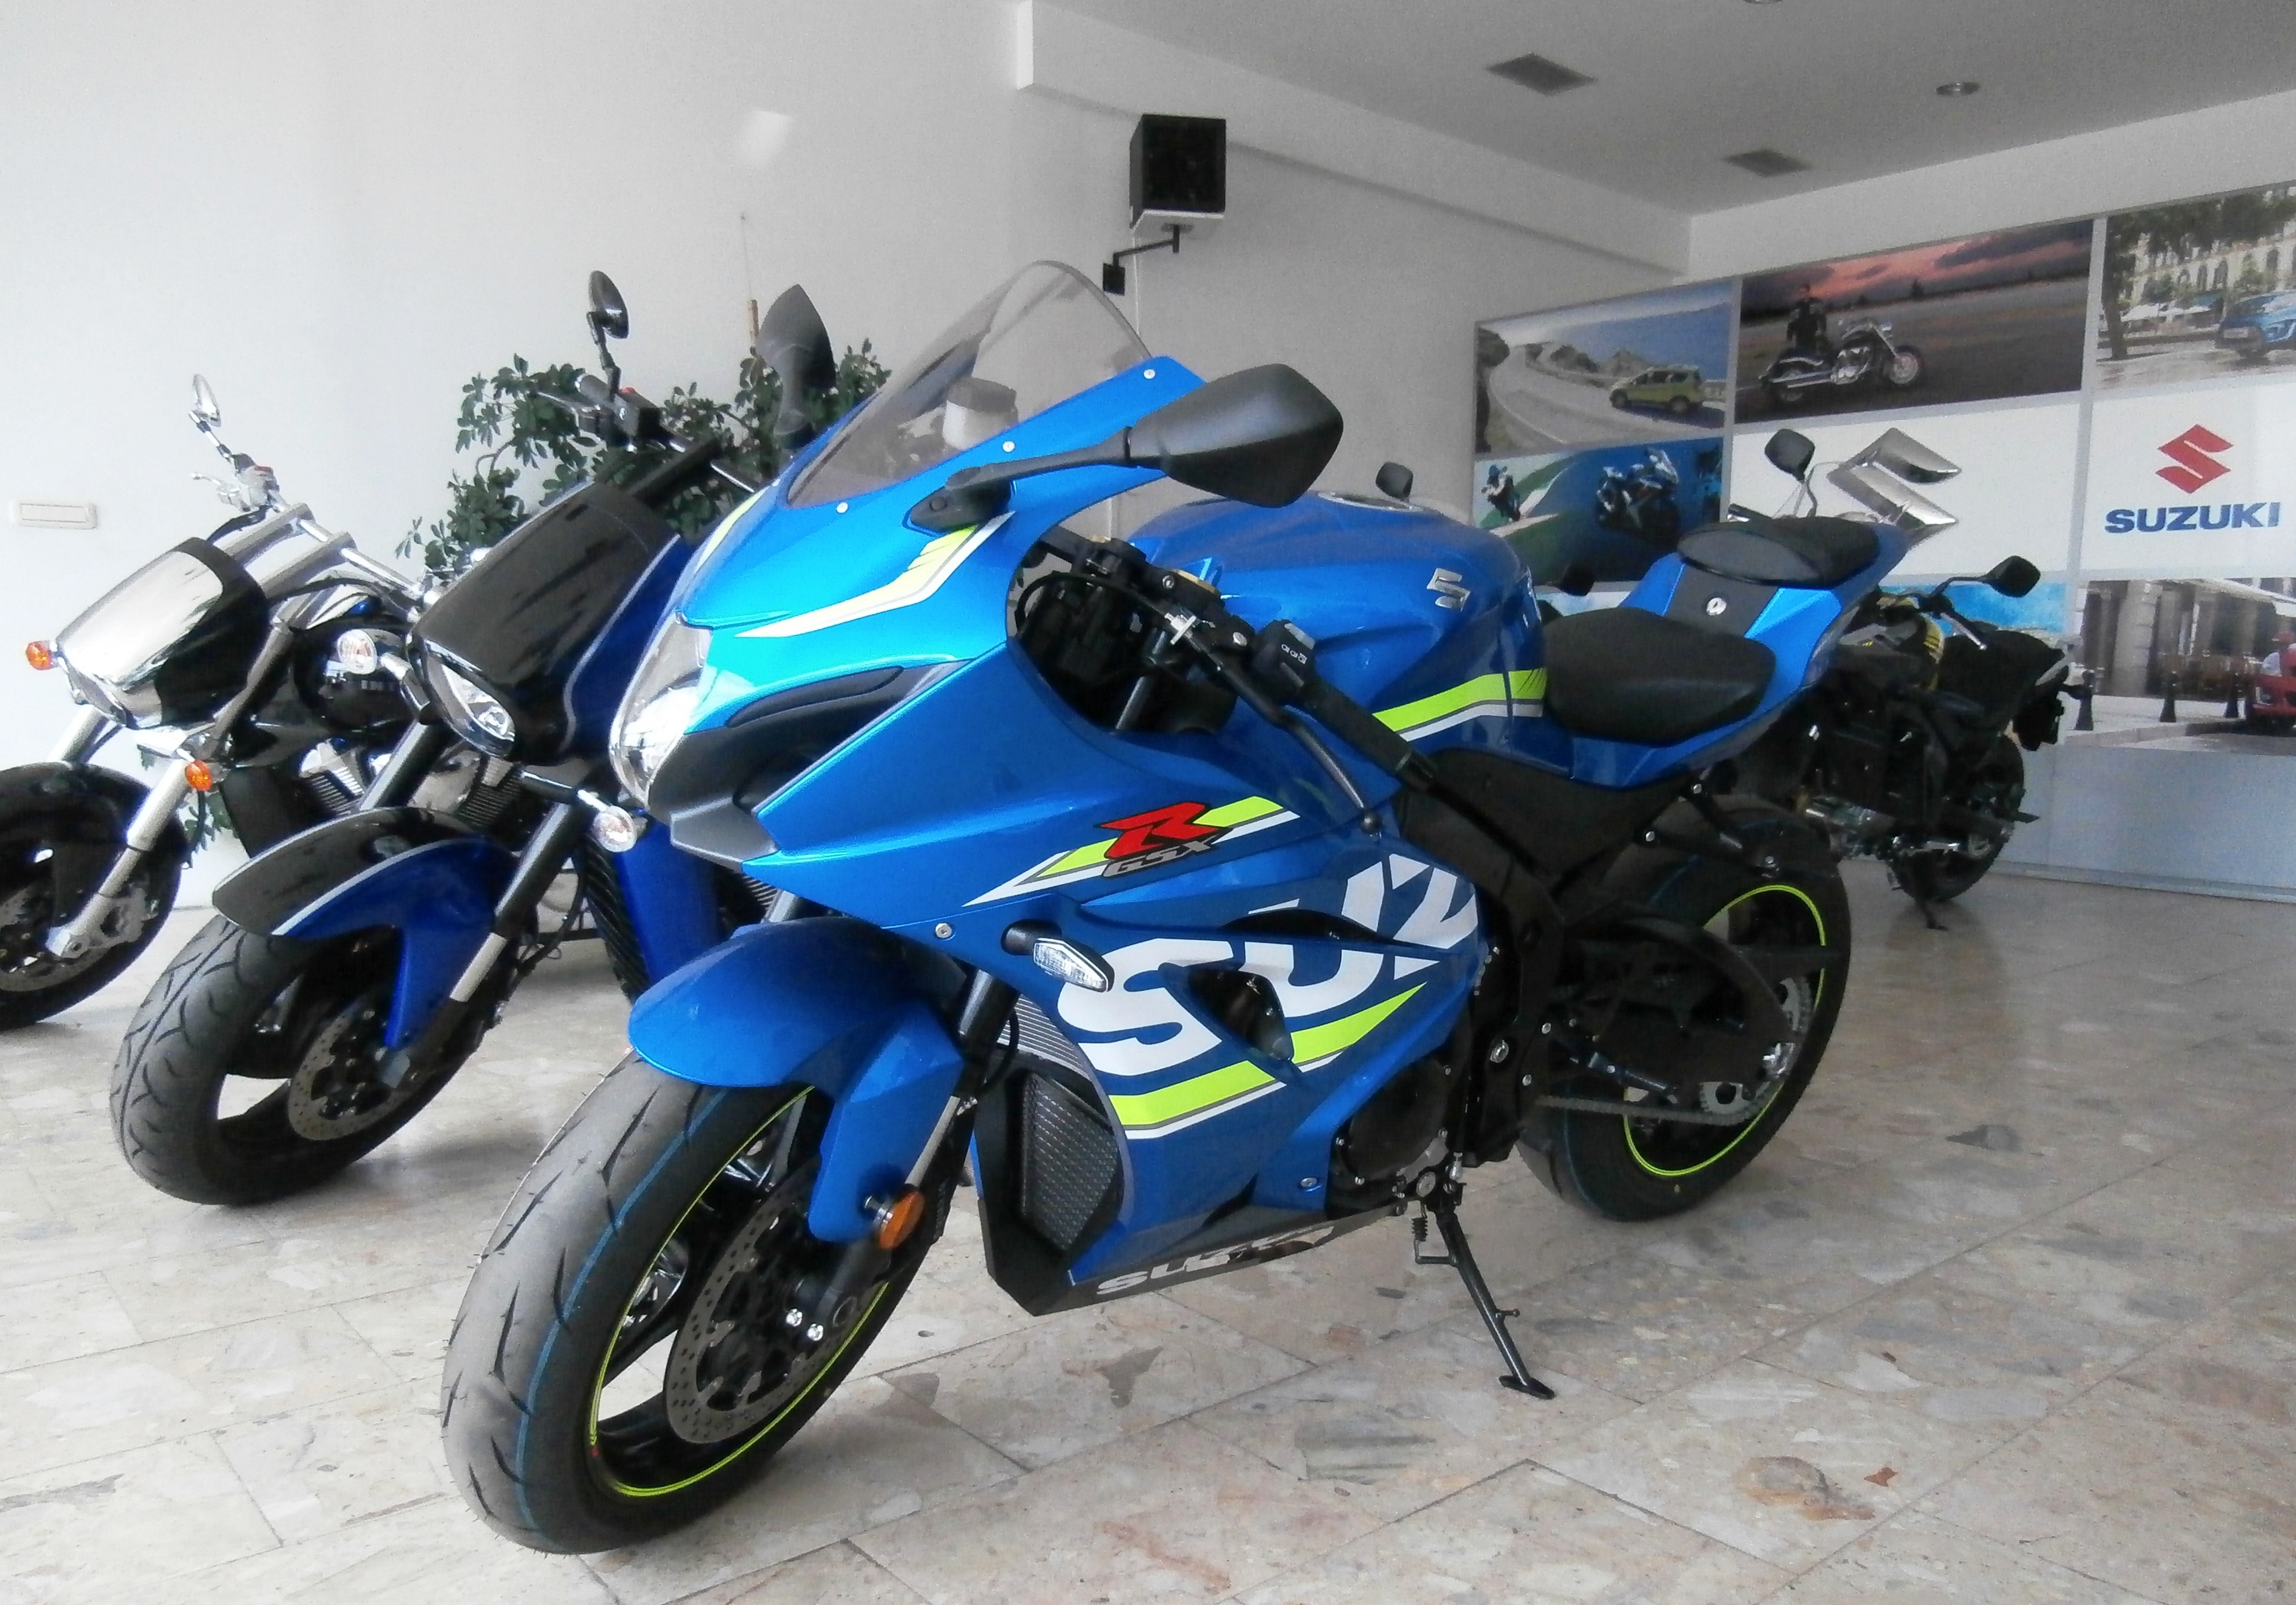 Novi Suzuki motocikli – modeli GSX-R 1000, V-Strom 650 i BURGMAN 650 dostupni odmah po uplati